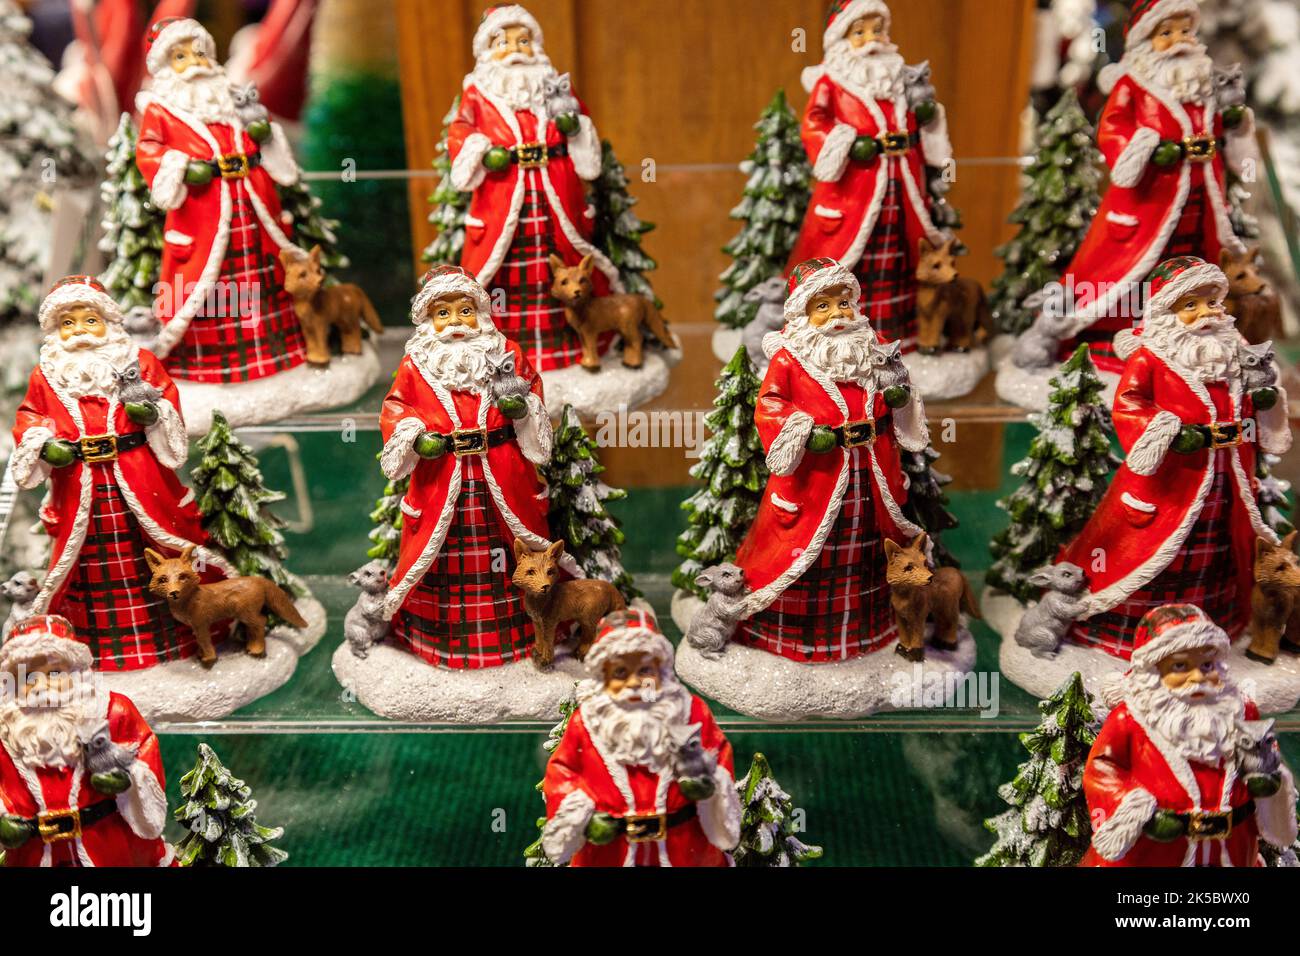 Weihnachtsschmuck mehrerer Weihnachtsmann-Figuren auf Einem Regal in Einem Geschäft zum Verkauf zur Weihnachtszeit. Weihnachtsmann, St. Nicholas, St. Nick, Stockfoto